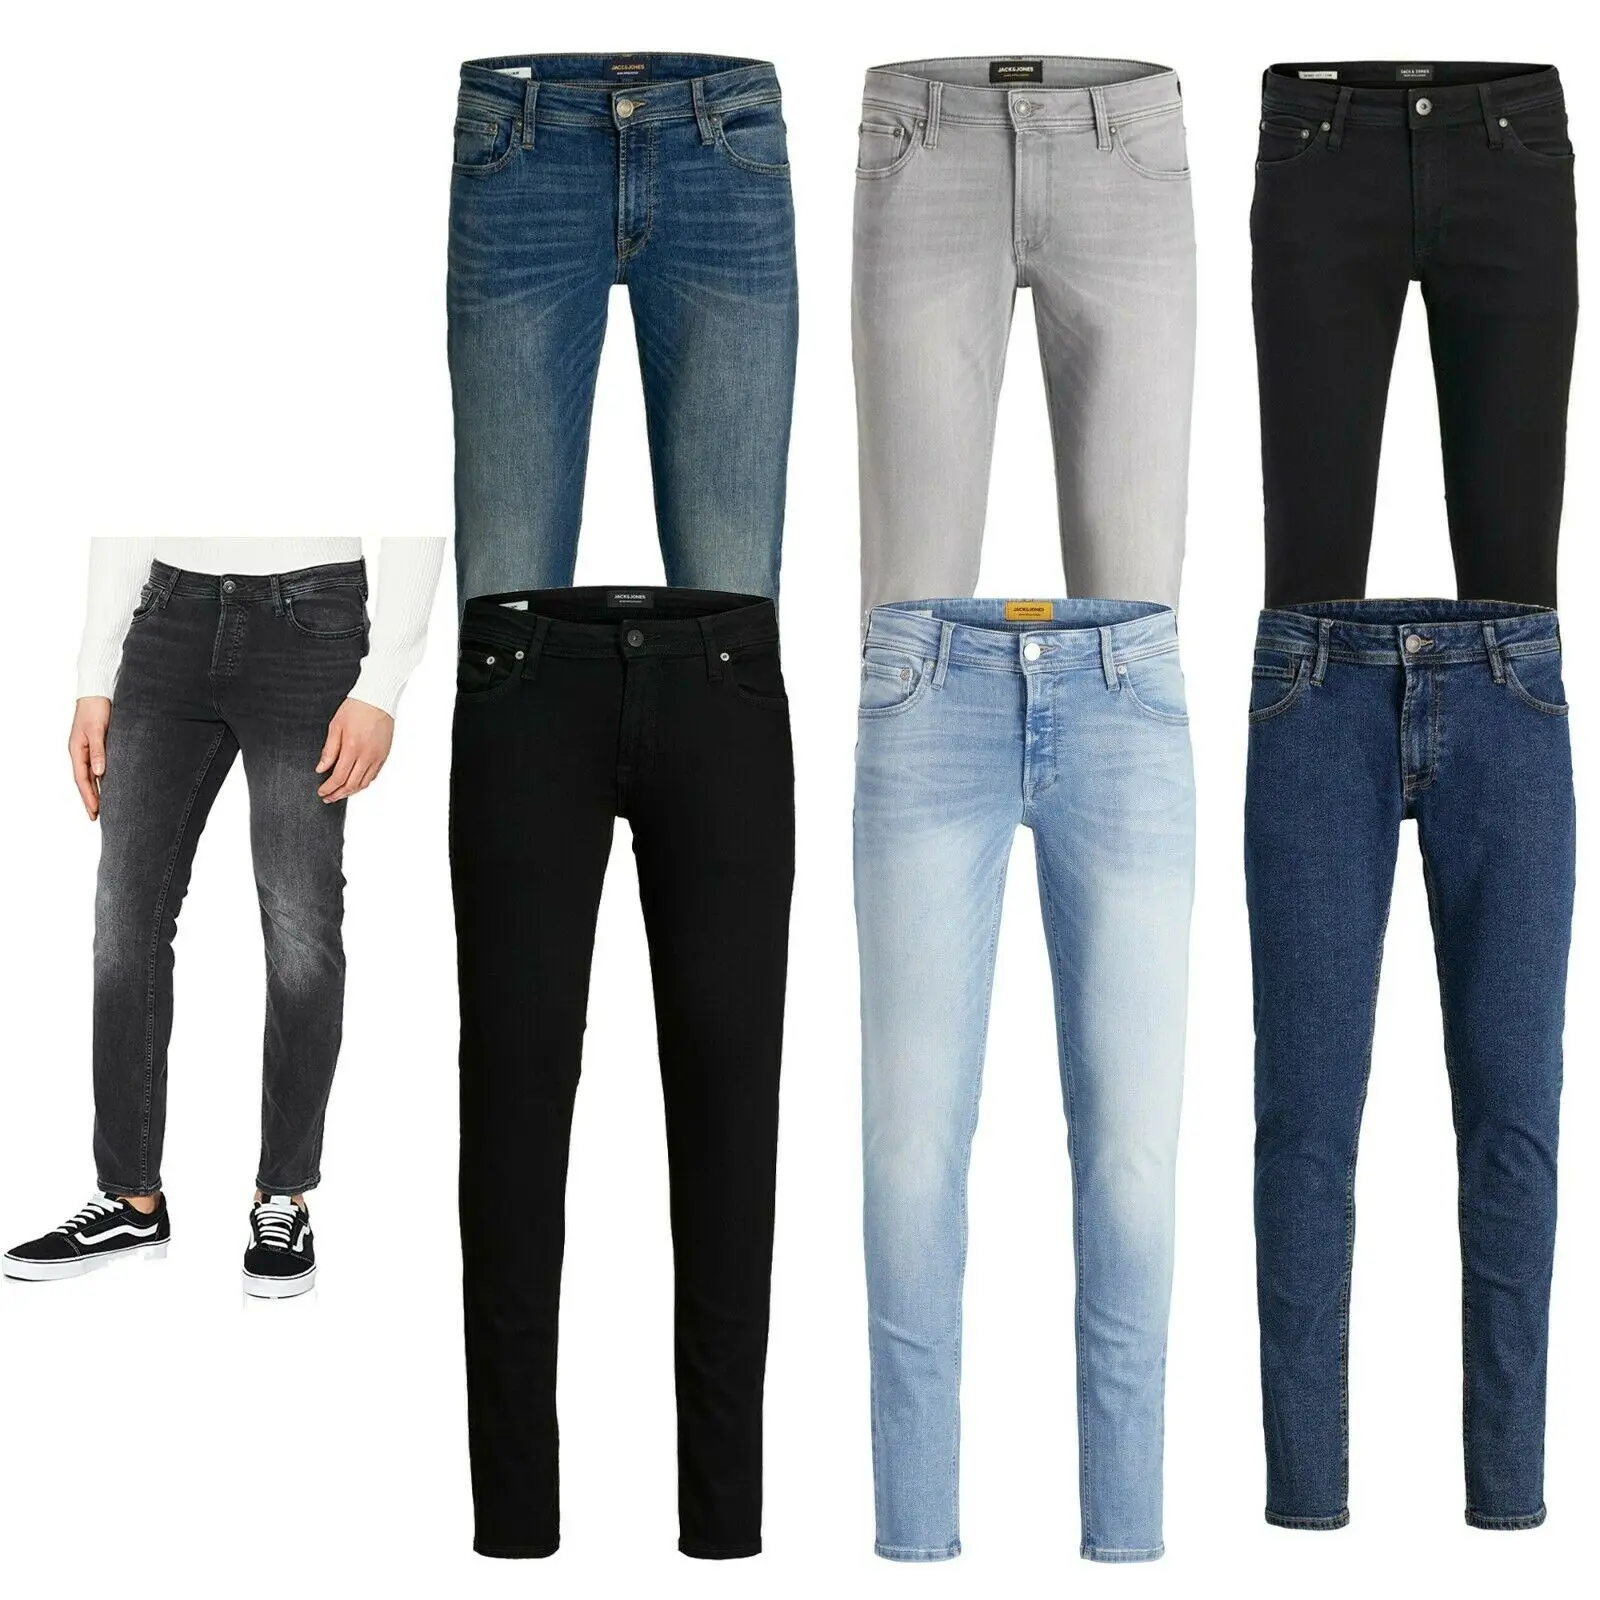 

Мужские облегающие джинсы стрейч Jack Jones, синие джинсовые брюки, повседневные брюки